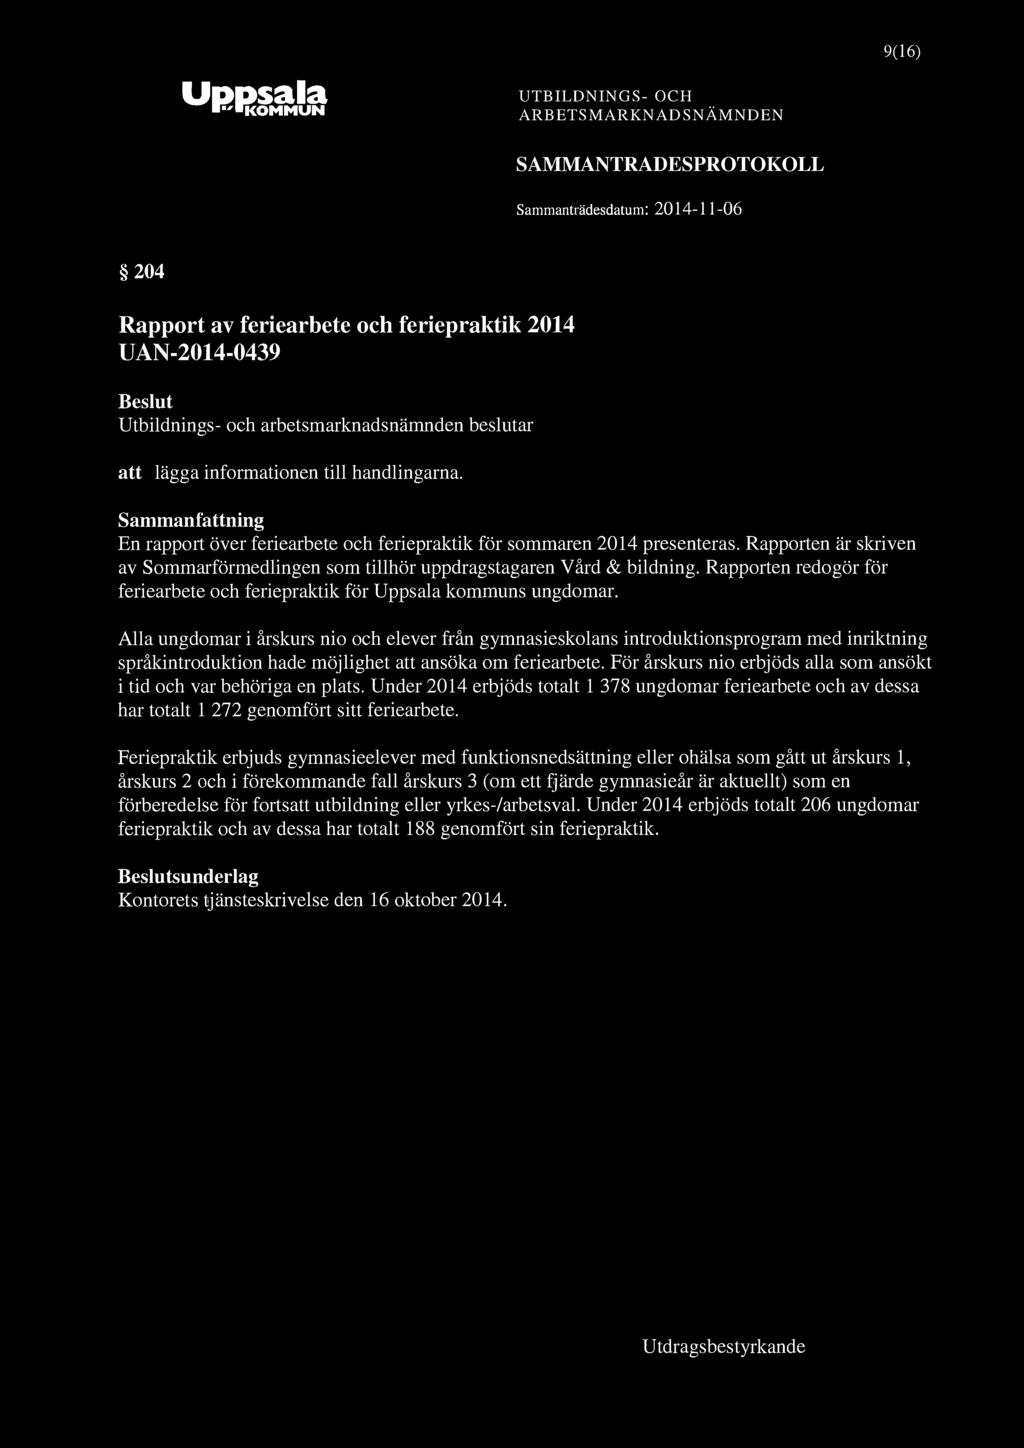 9(16) "^ KOMMUN 204 Rapport av feriearbete och feriepraktik 2014 UAN-2014-0439 att lägga informationen till handlingarna. En rapport över feriearbete och feriepraktik för sommaren 2014 presenteras.